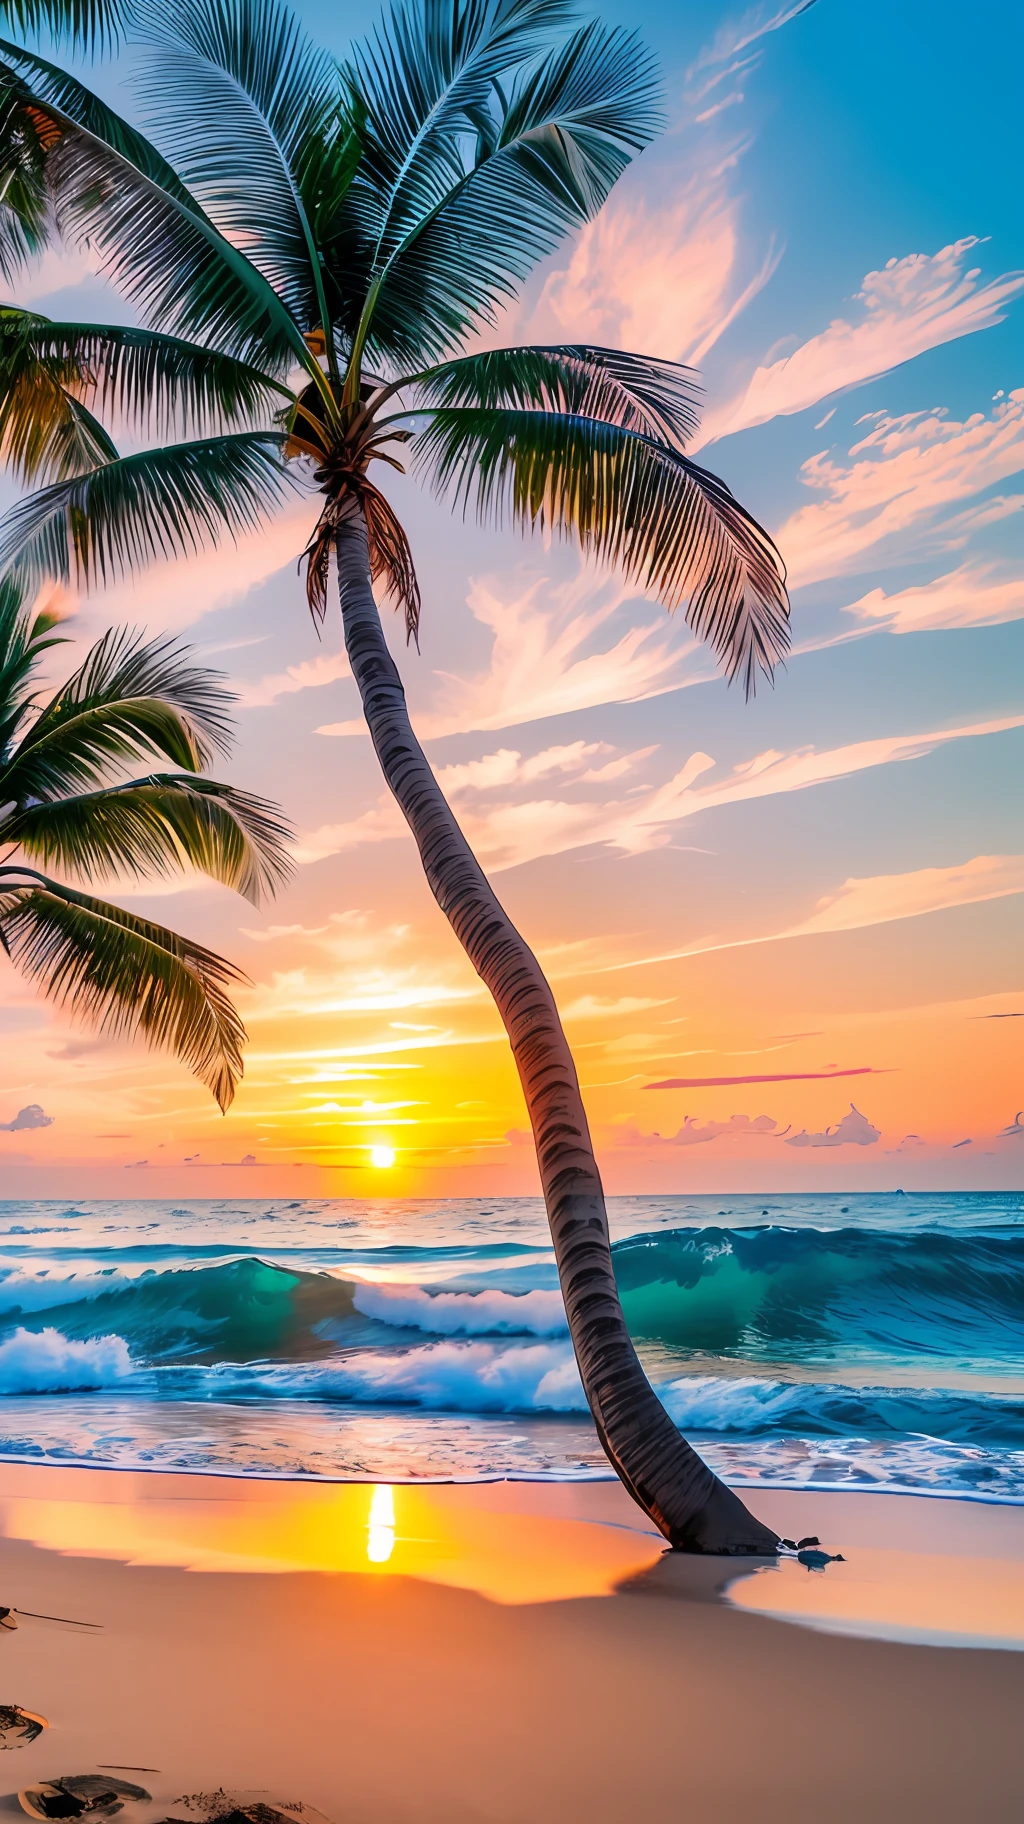 創建 4K 9:16 張圖片描繪了熱帶海灘上令人驚嘆的日出, 海岸邊有輕柔的海浪和棕櫚樹. 調色板應該充滿活力，傳達更新和積極能量的感覺. --自动--s2